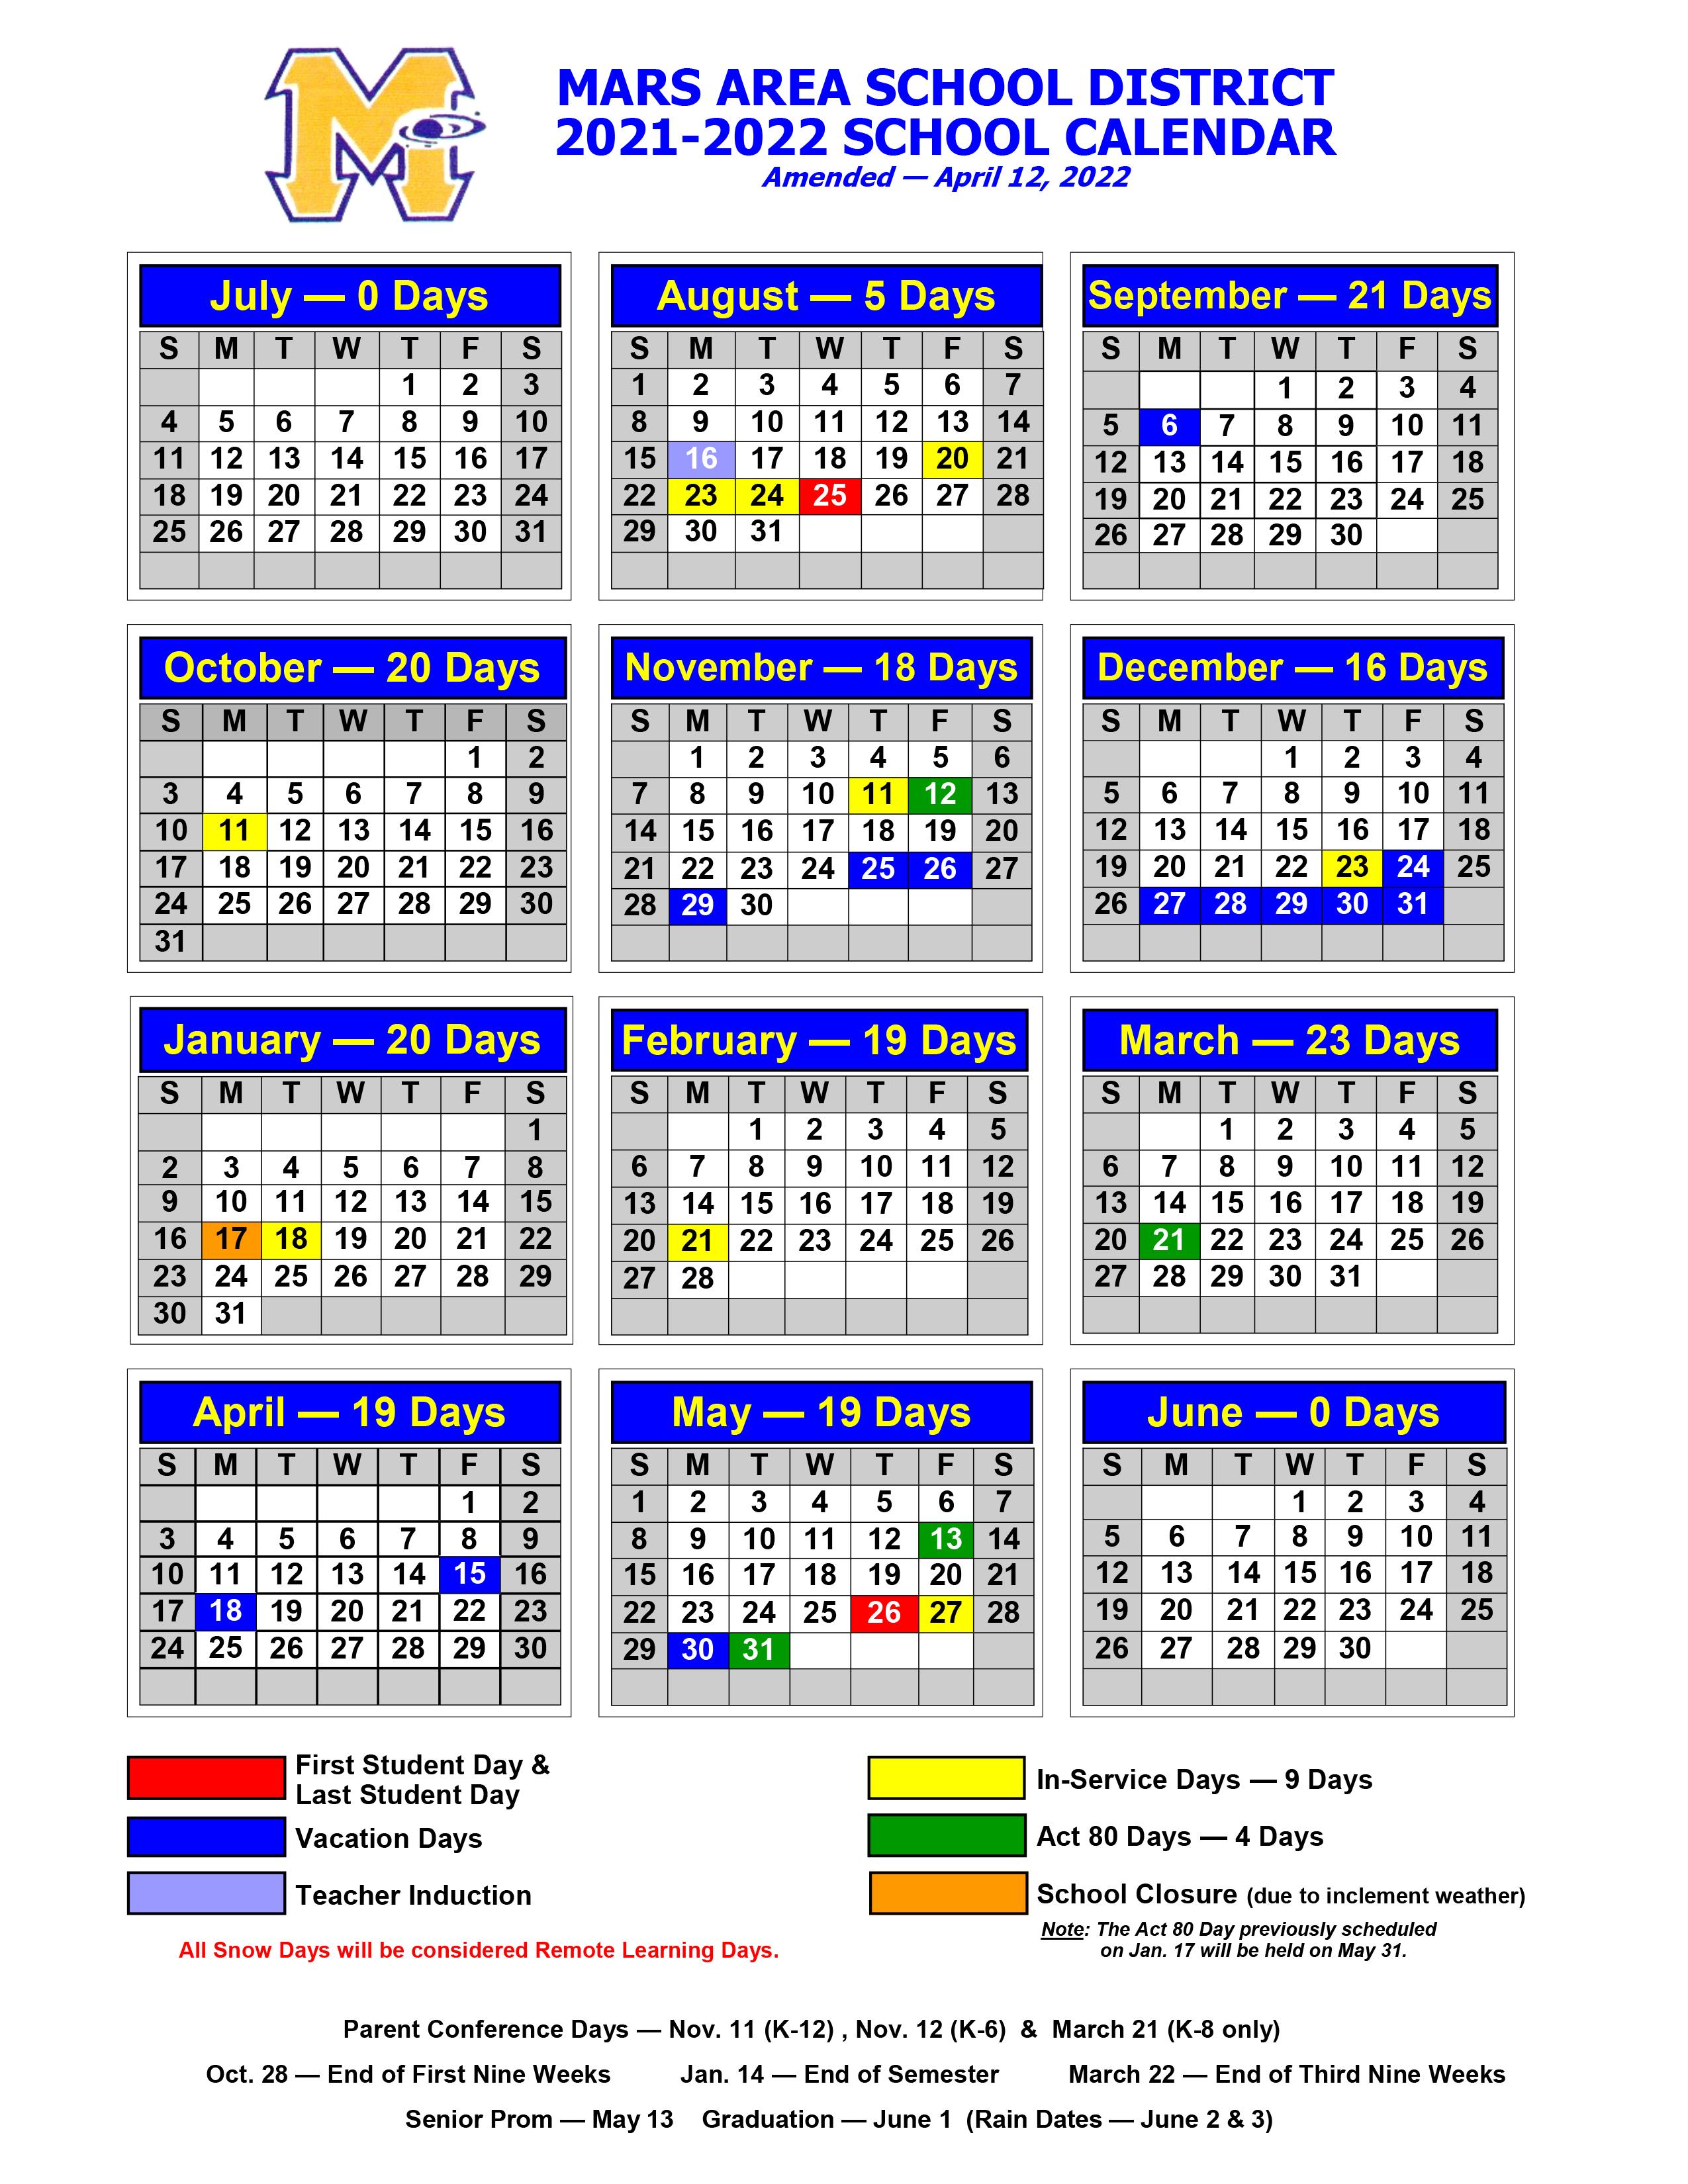 2021-2022 Mars Area School District Calendar